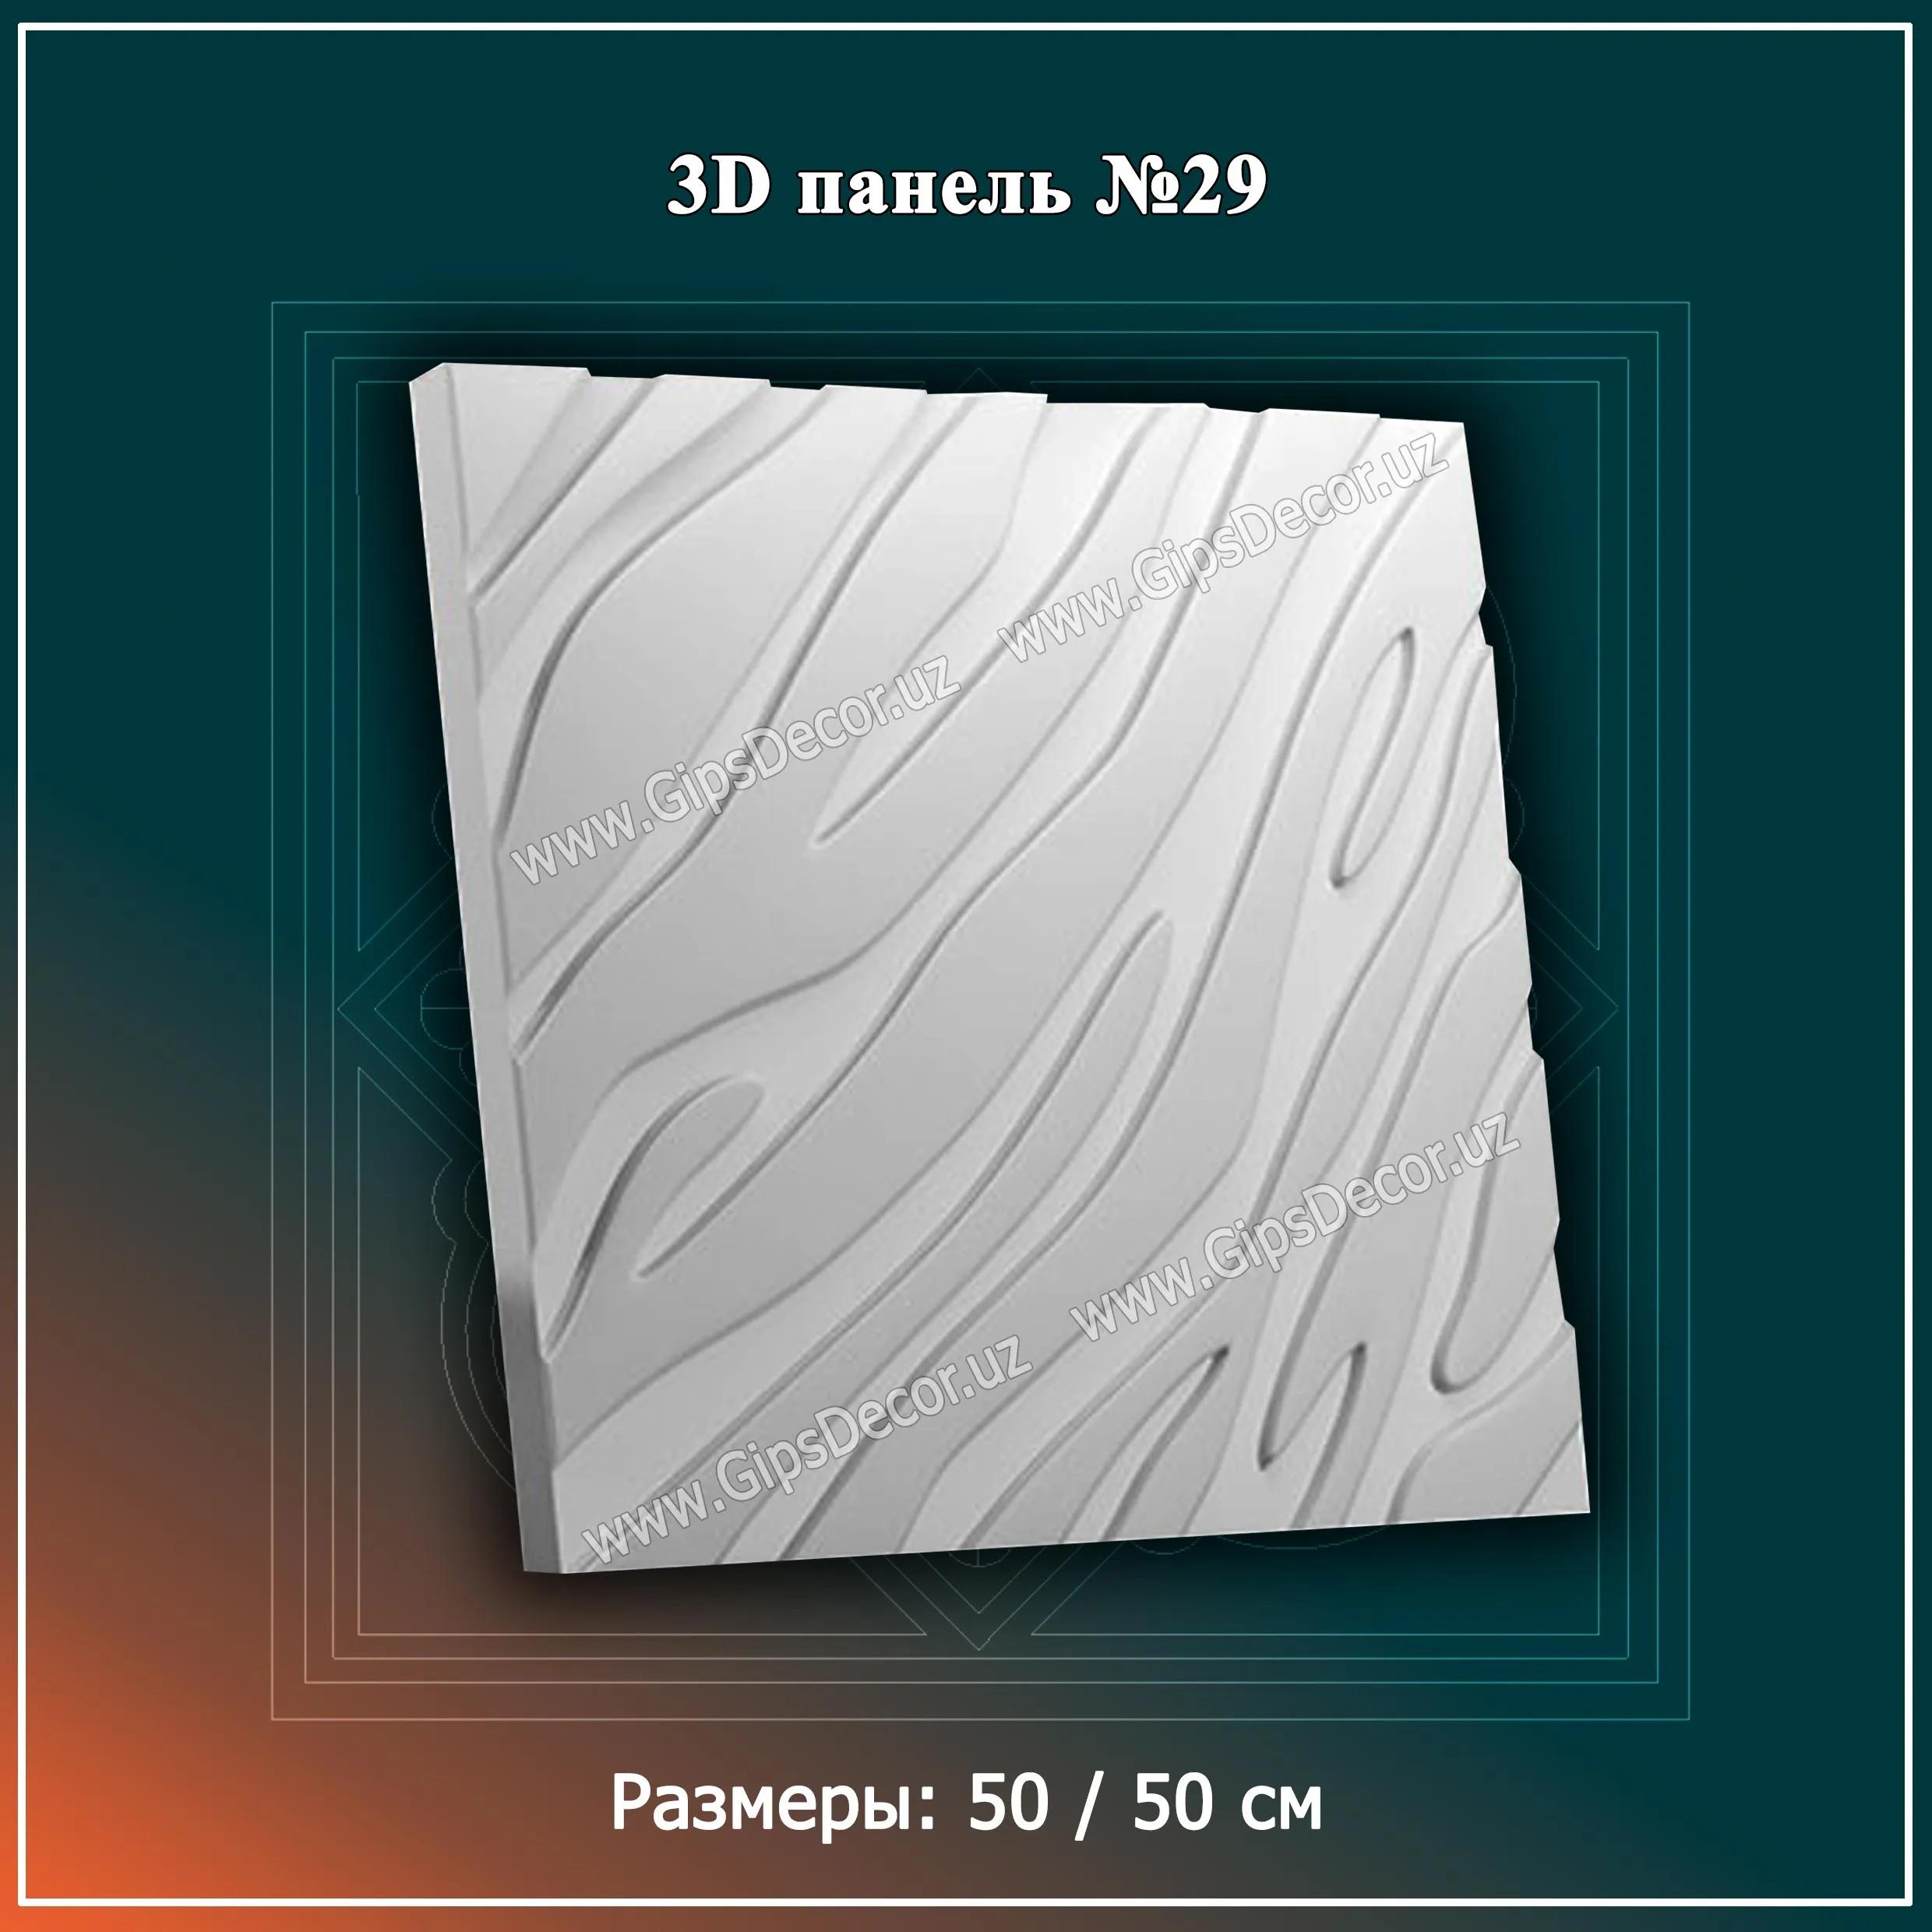 3D Панель №29 Размеры: 50 / 50 см#1